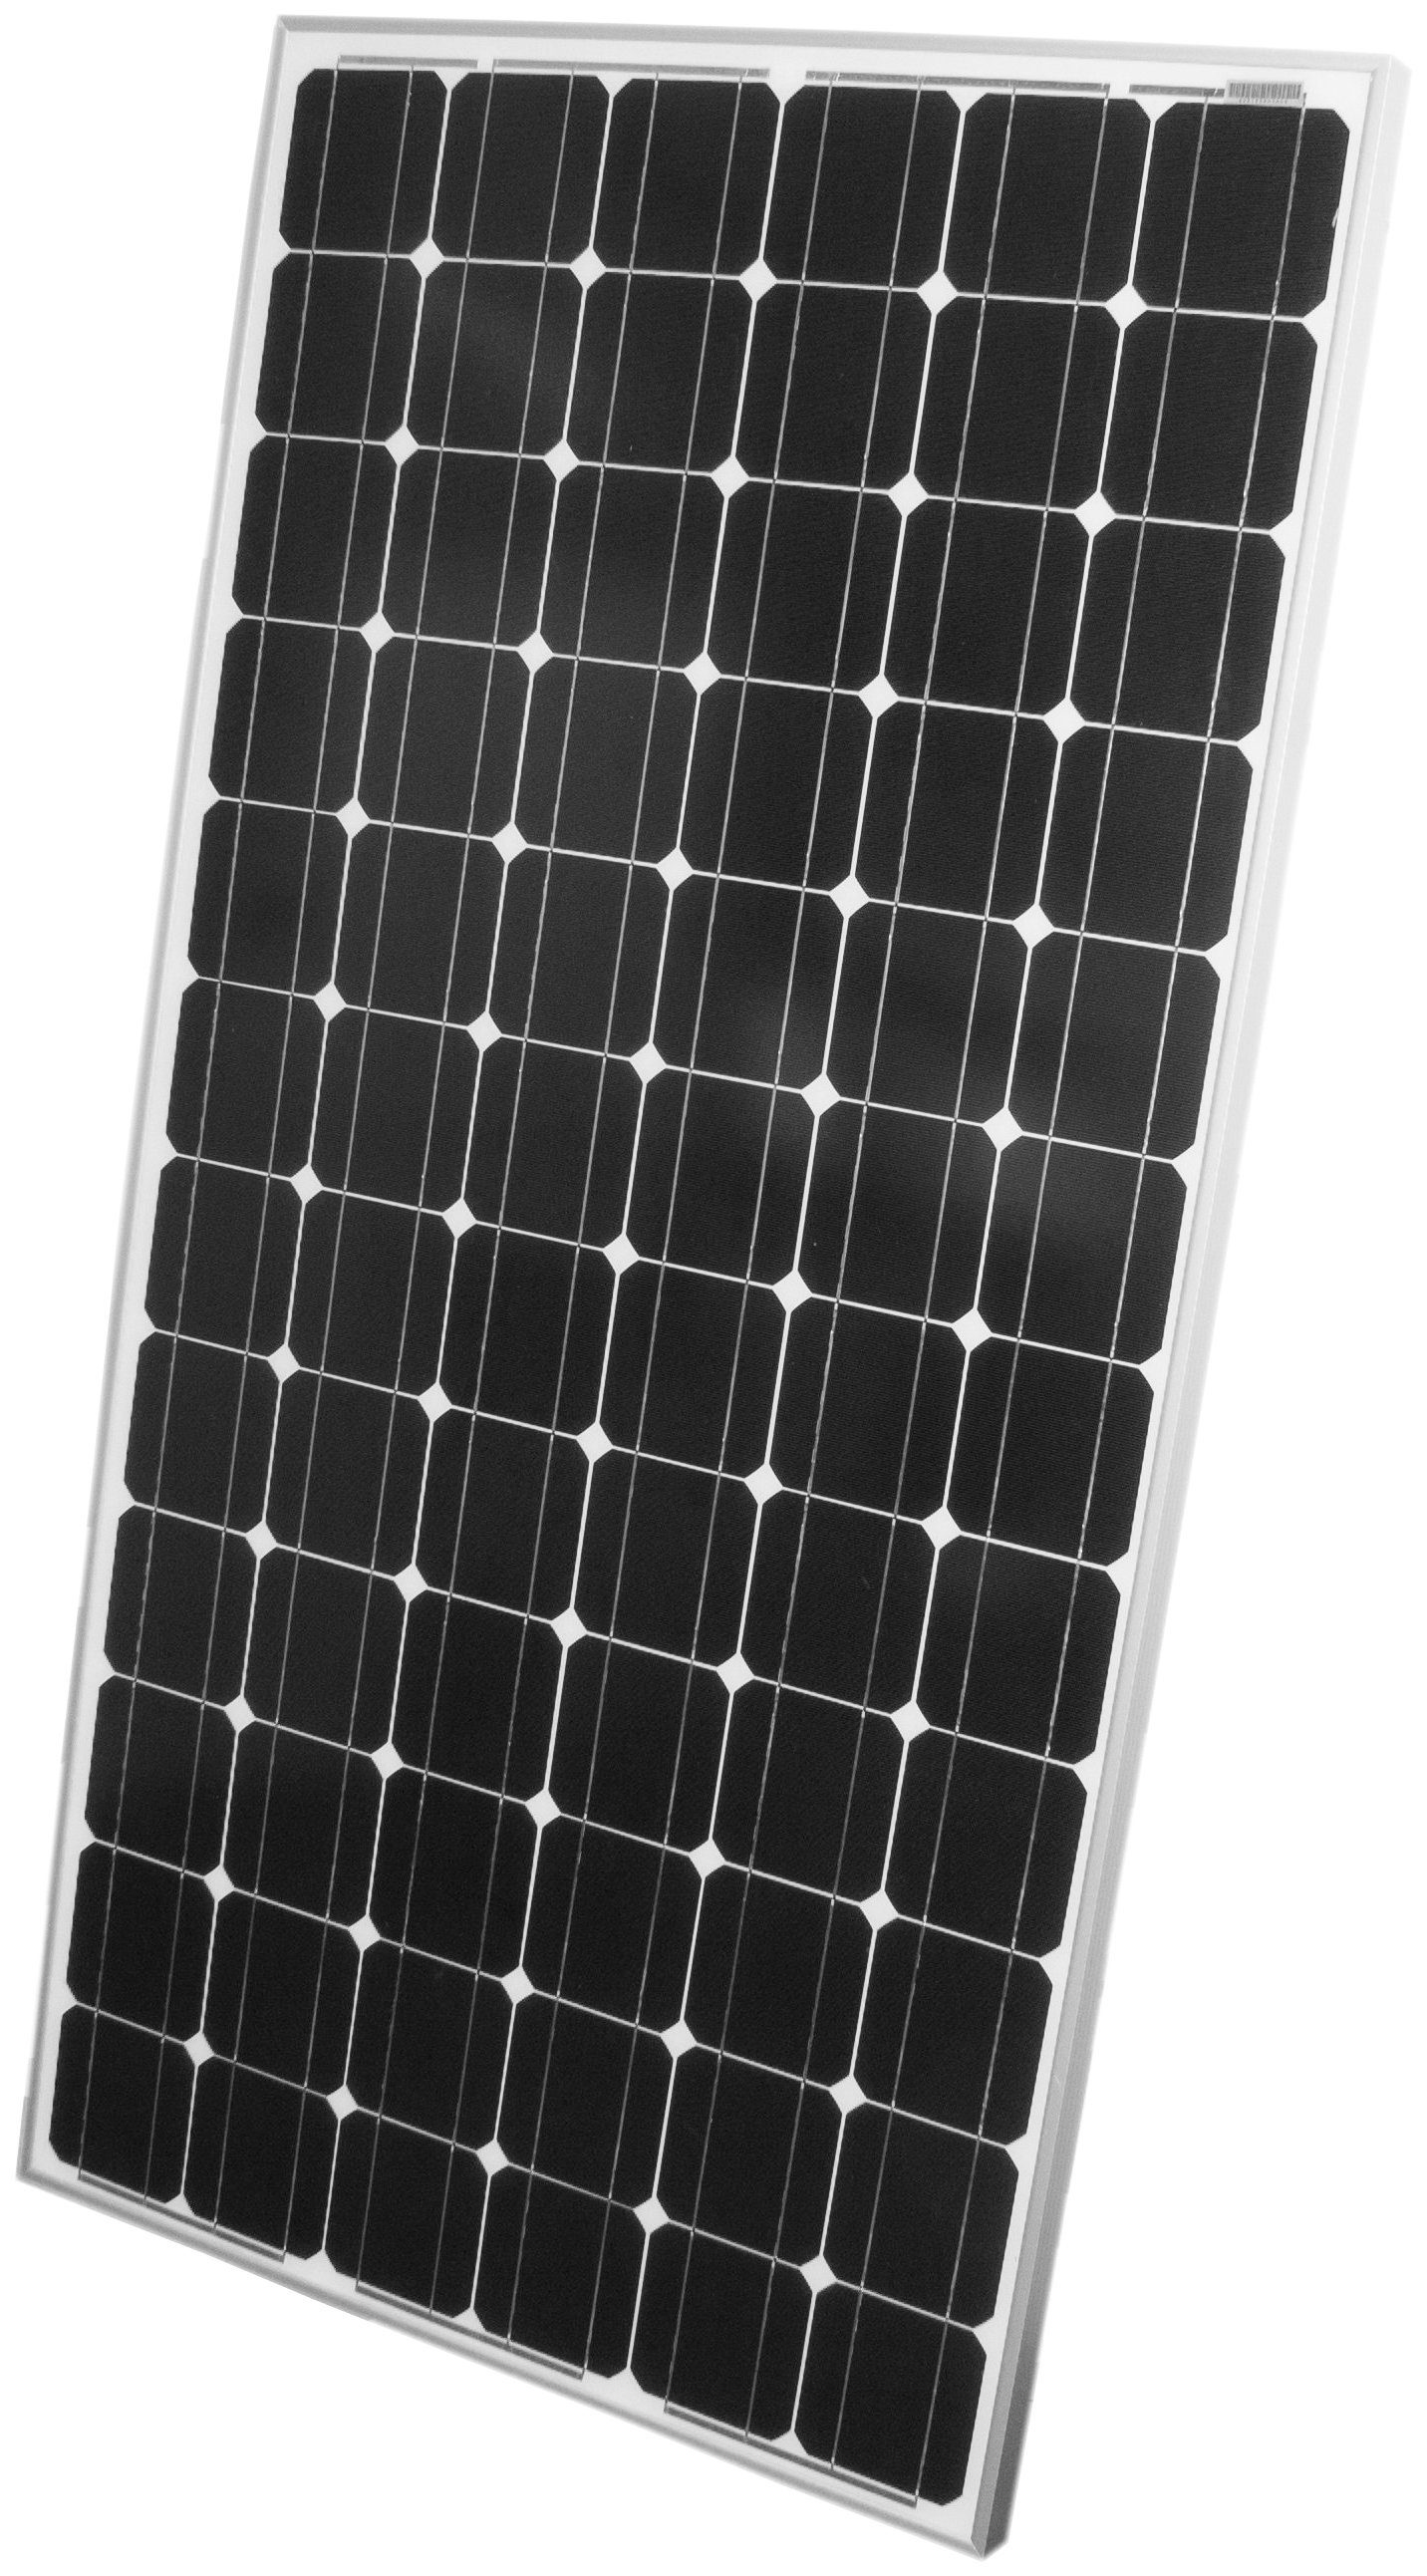 Schutz IP65 W, 24 200_5, Phaesun Sun Plus Solarmodul VDC, 200